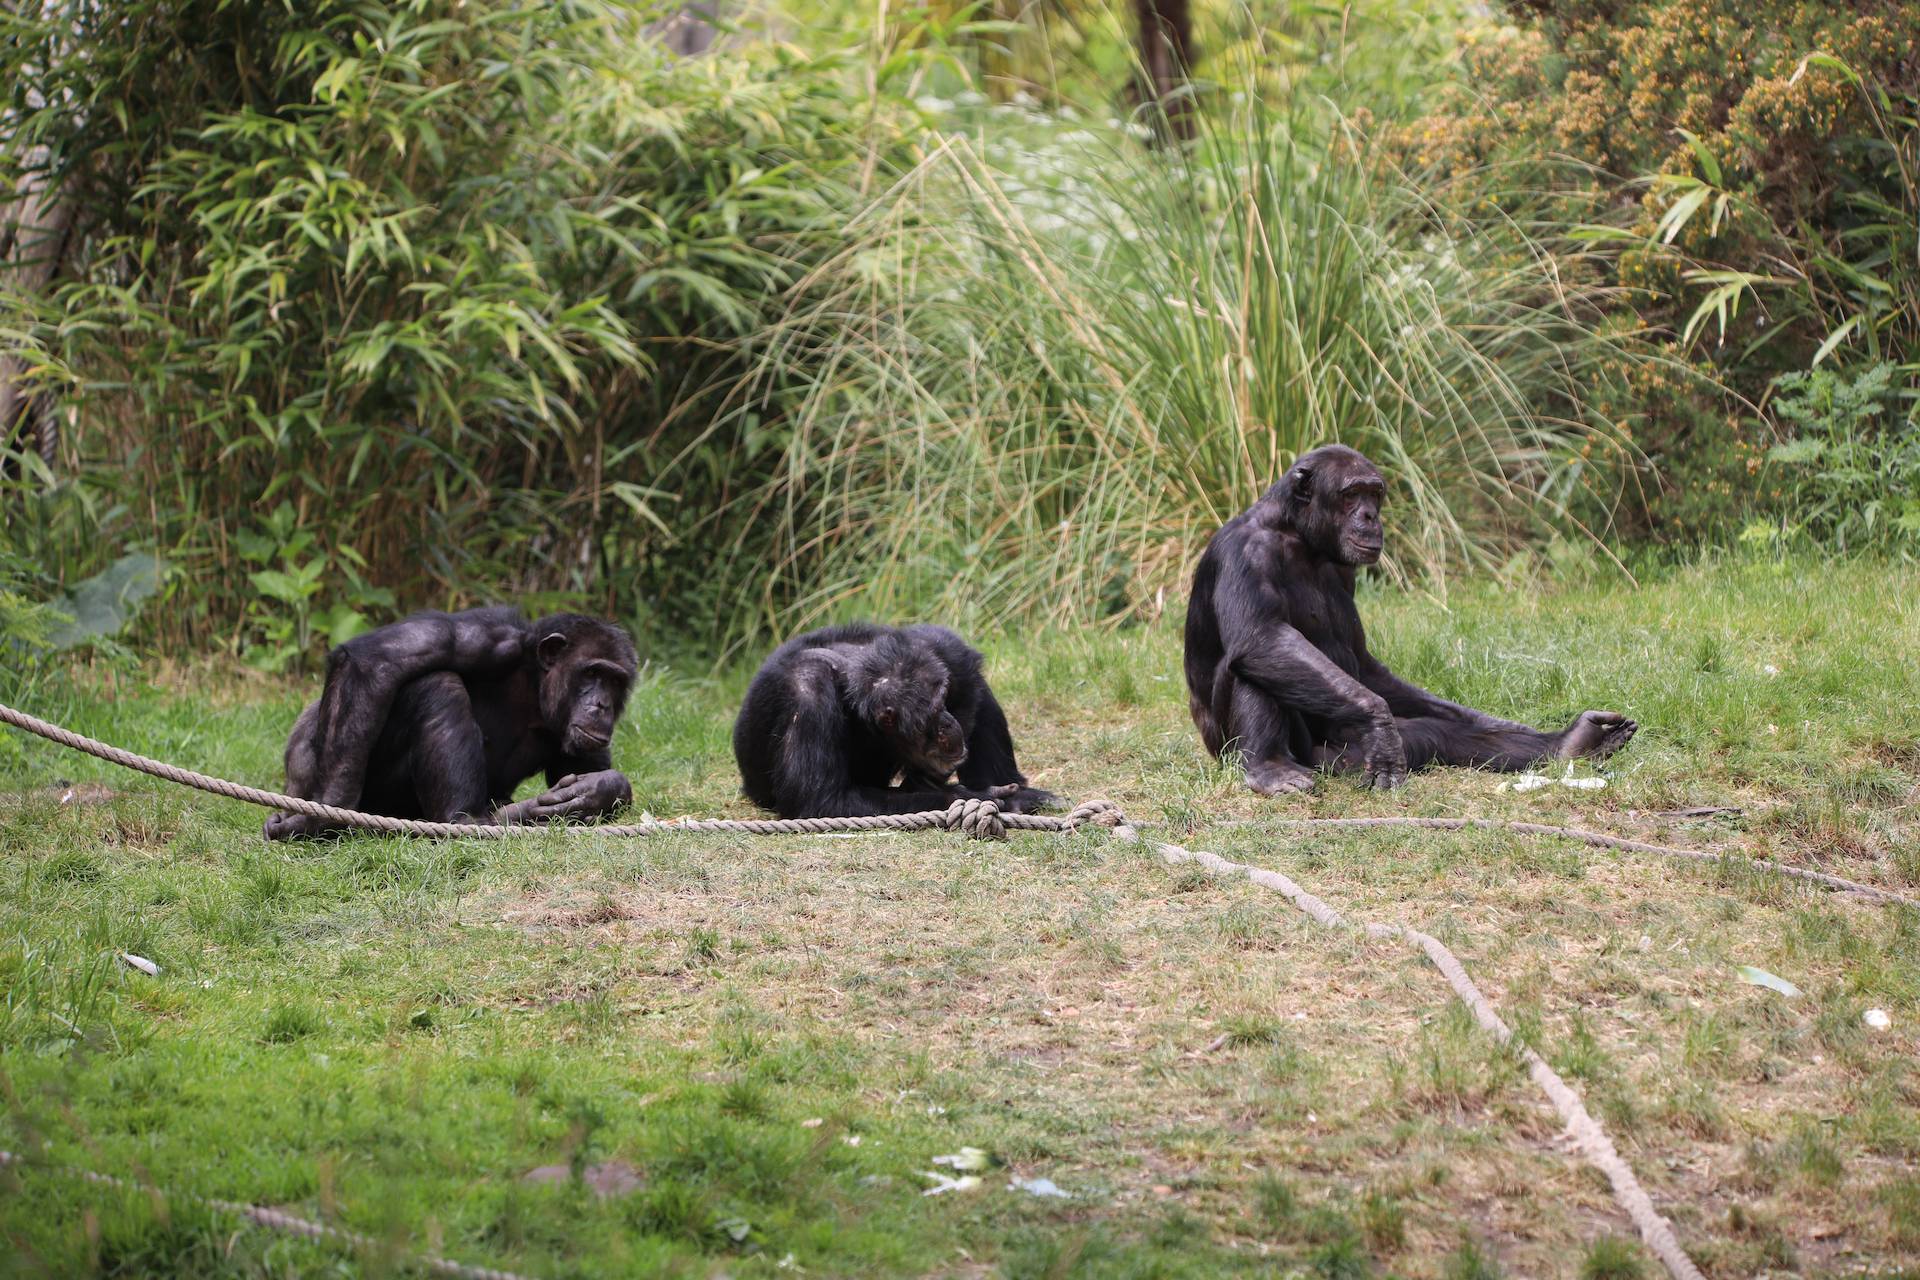 Group of three chimpanzees sitting outside on ground Budongo

Image: AMY MIDDLETON 2023